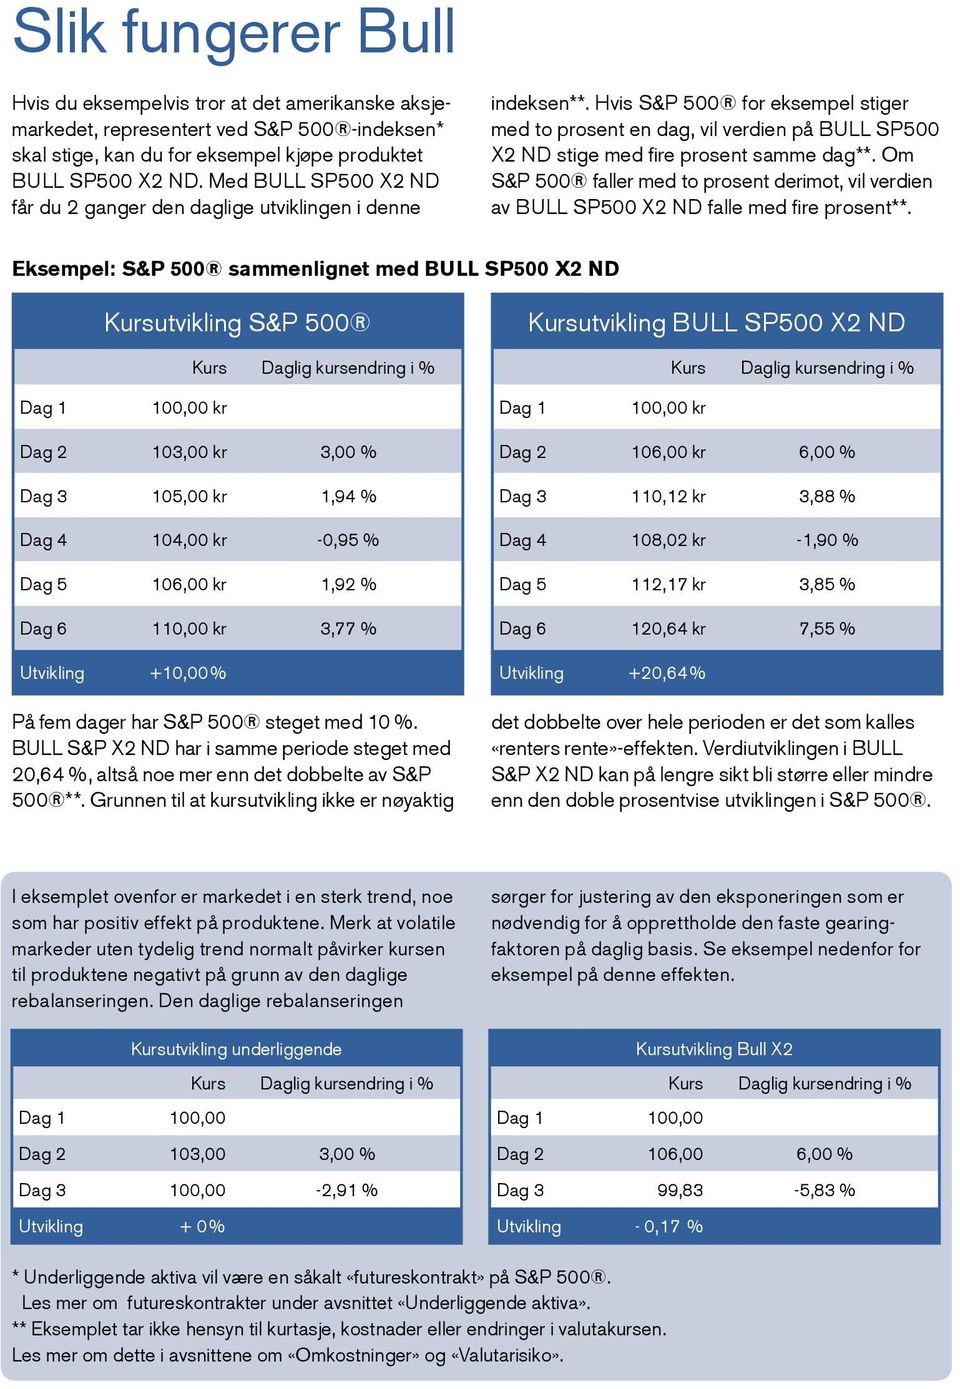 Hvis S&P 500 for eksempel stiger med to prosent en dag, vil verdien på BULL SP500 X2 ND stige med fire prosent samme dag**.